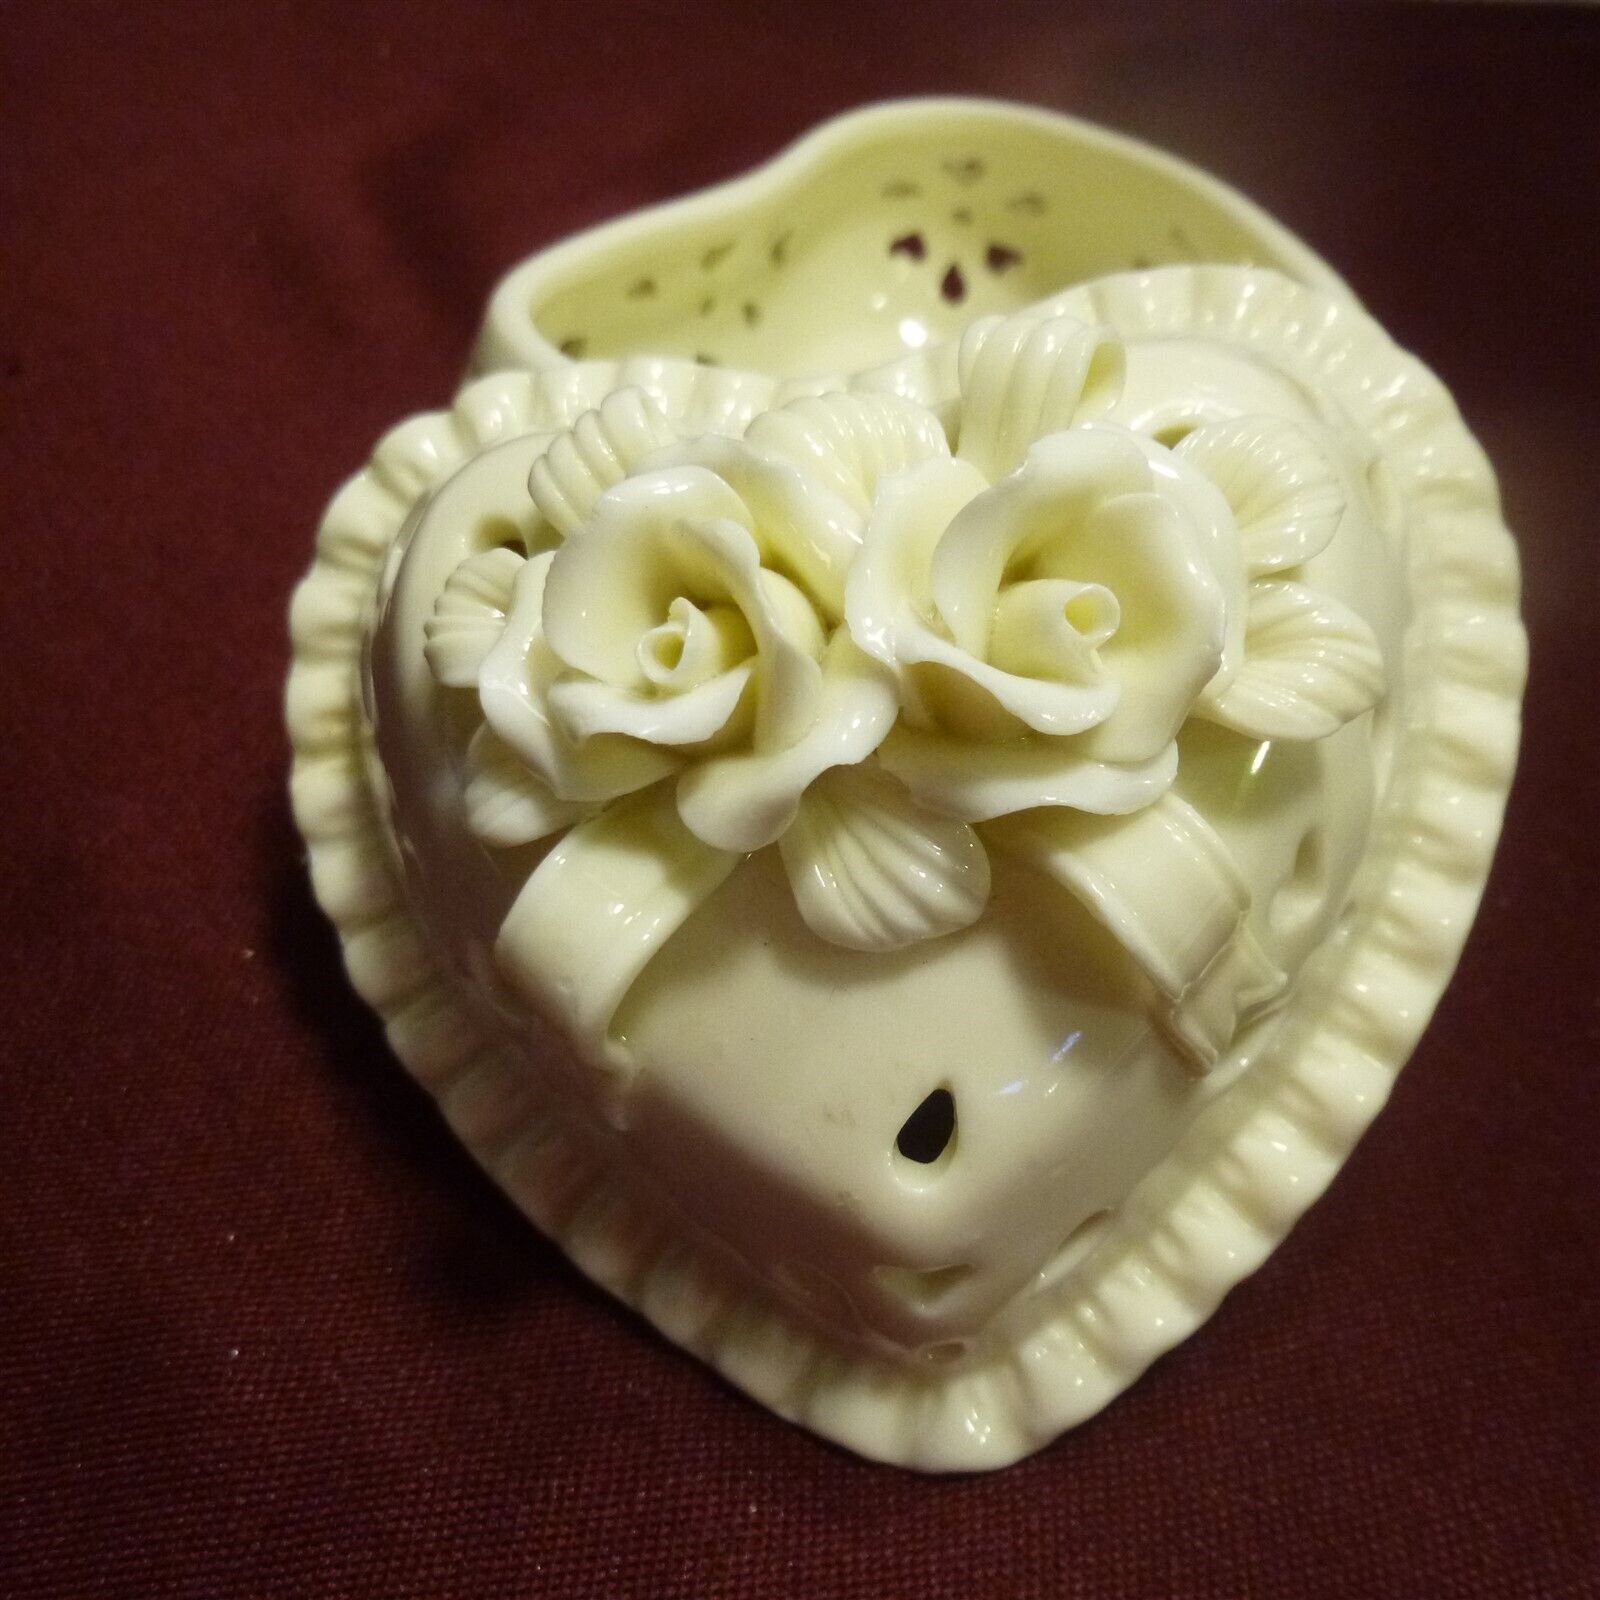 TRINKET BOX - Heart shaped porcelain w open weave design & raised flowers - MINT